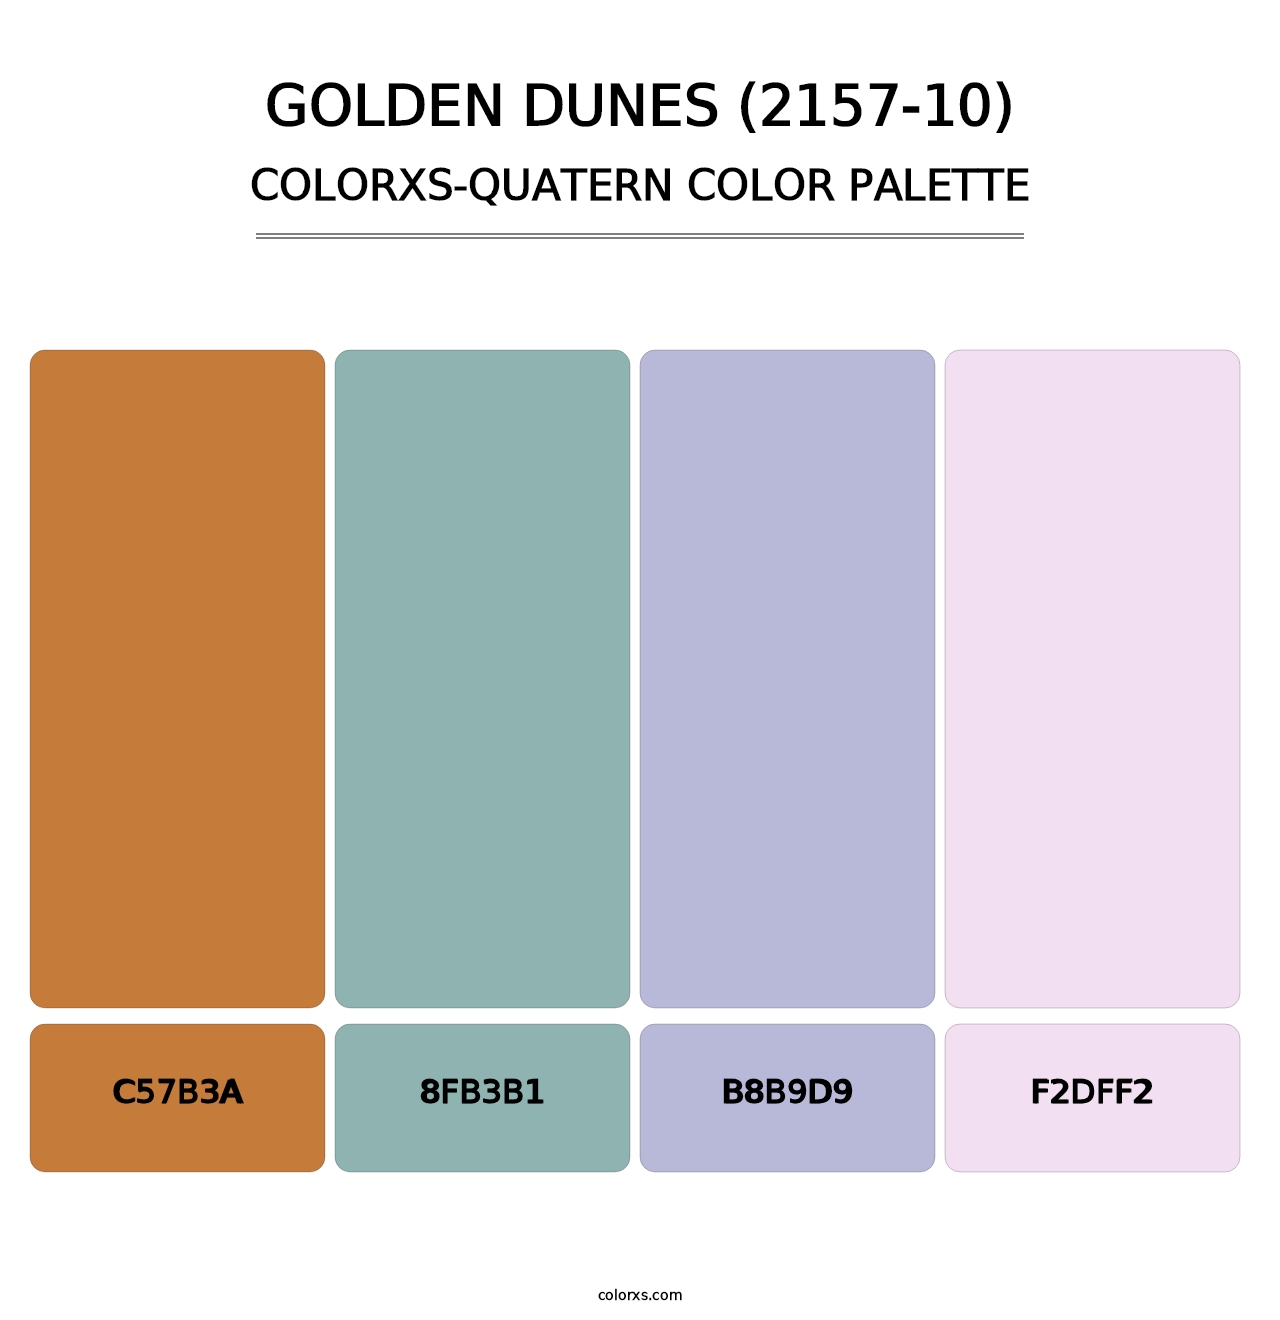 Golden Dunes (2157-10) - Colorxs Quatern Palette